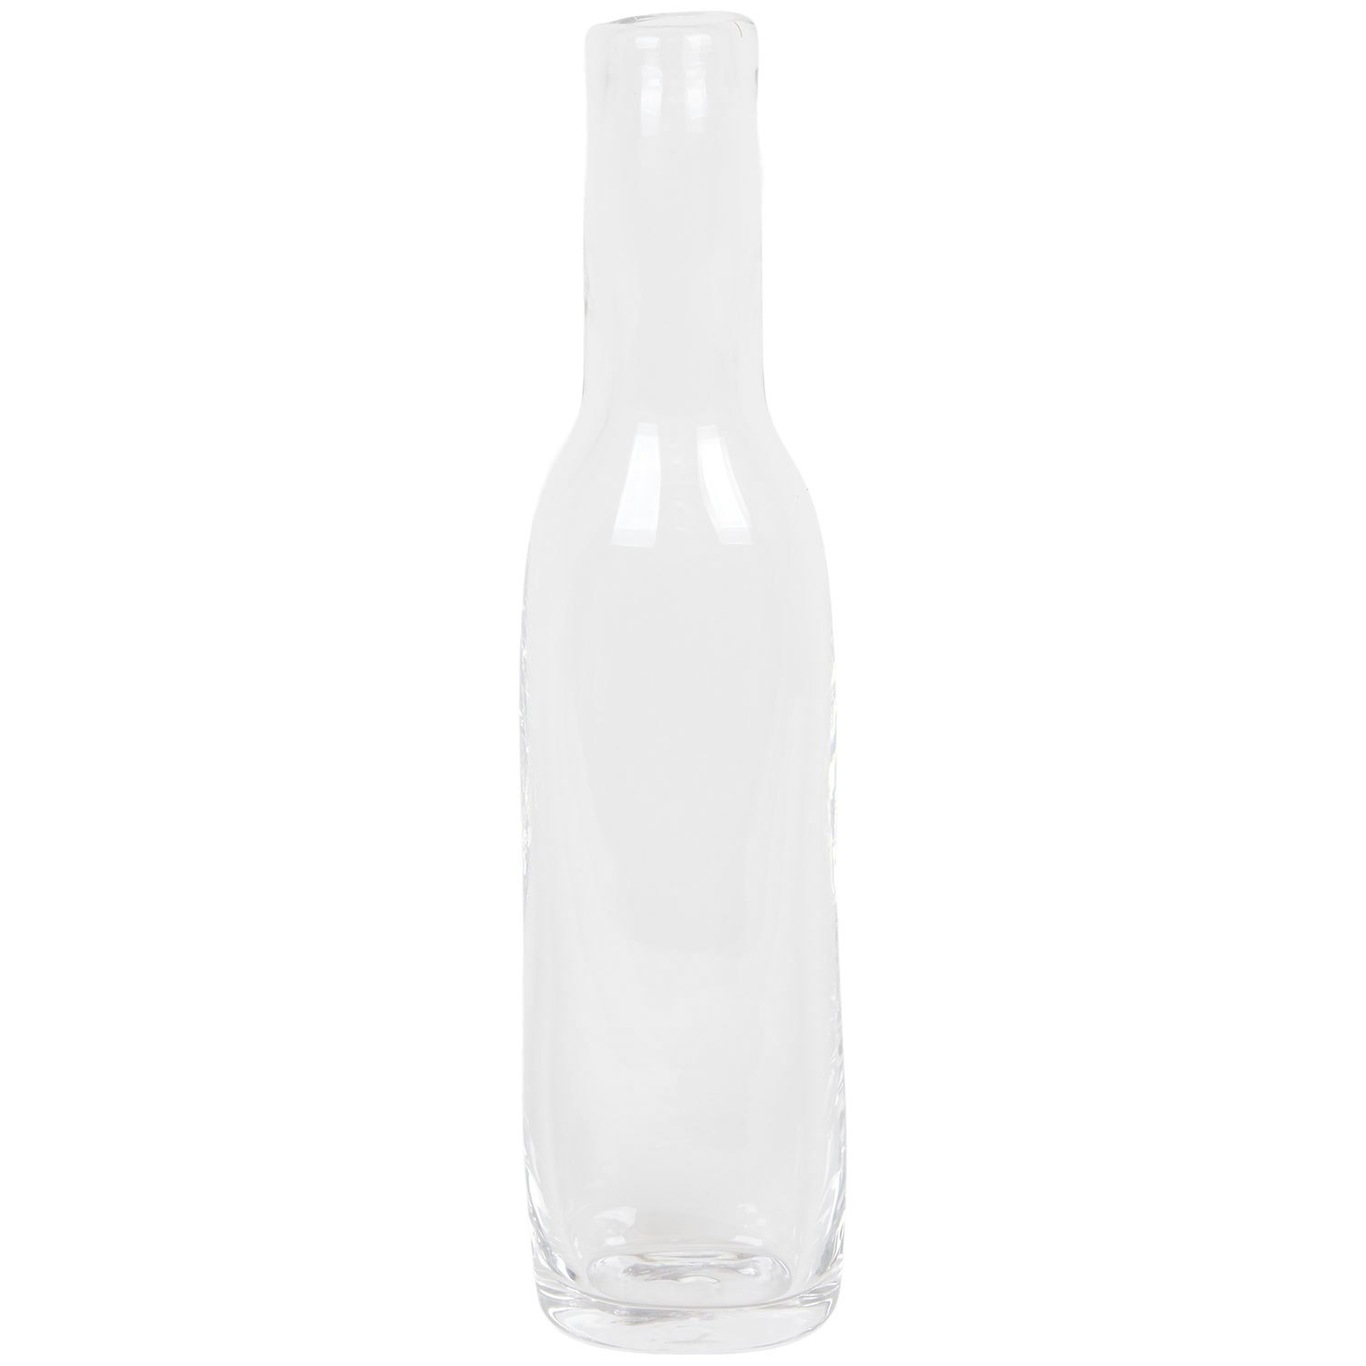 0405 Bottle Clear, Narrow